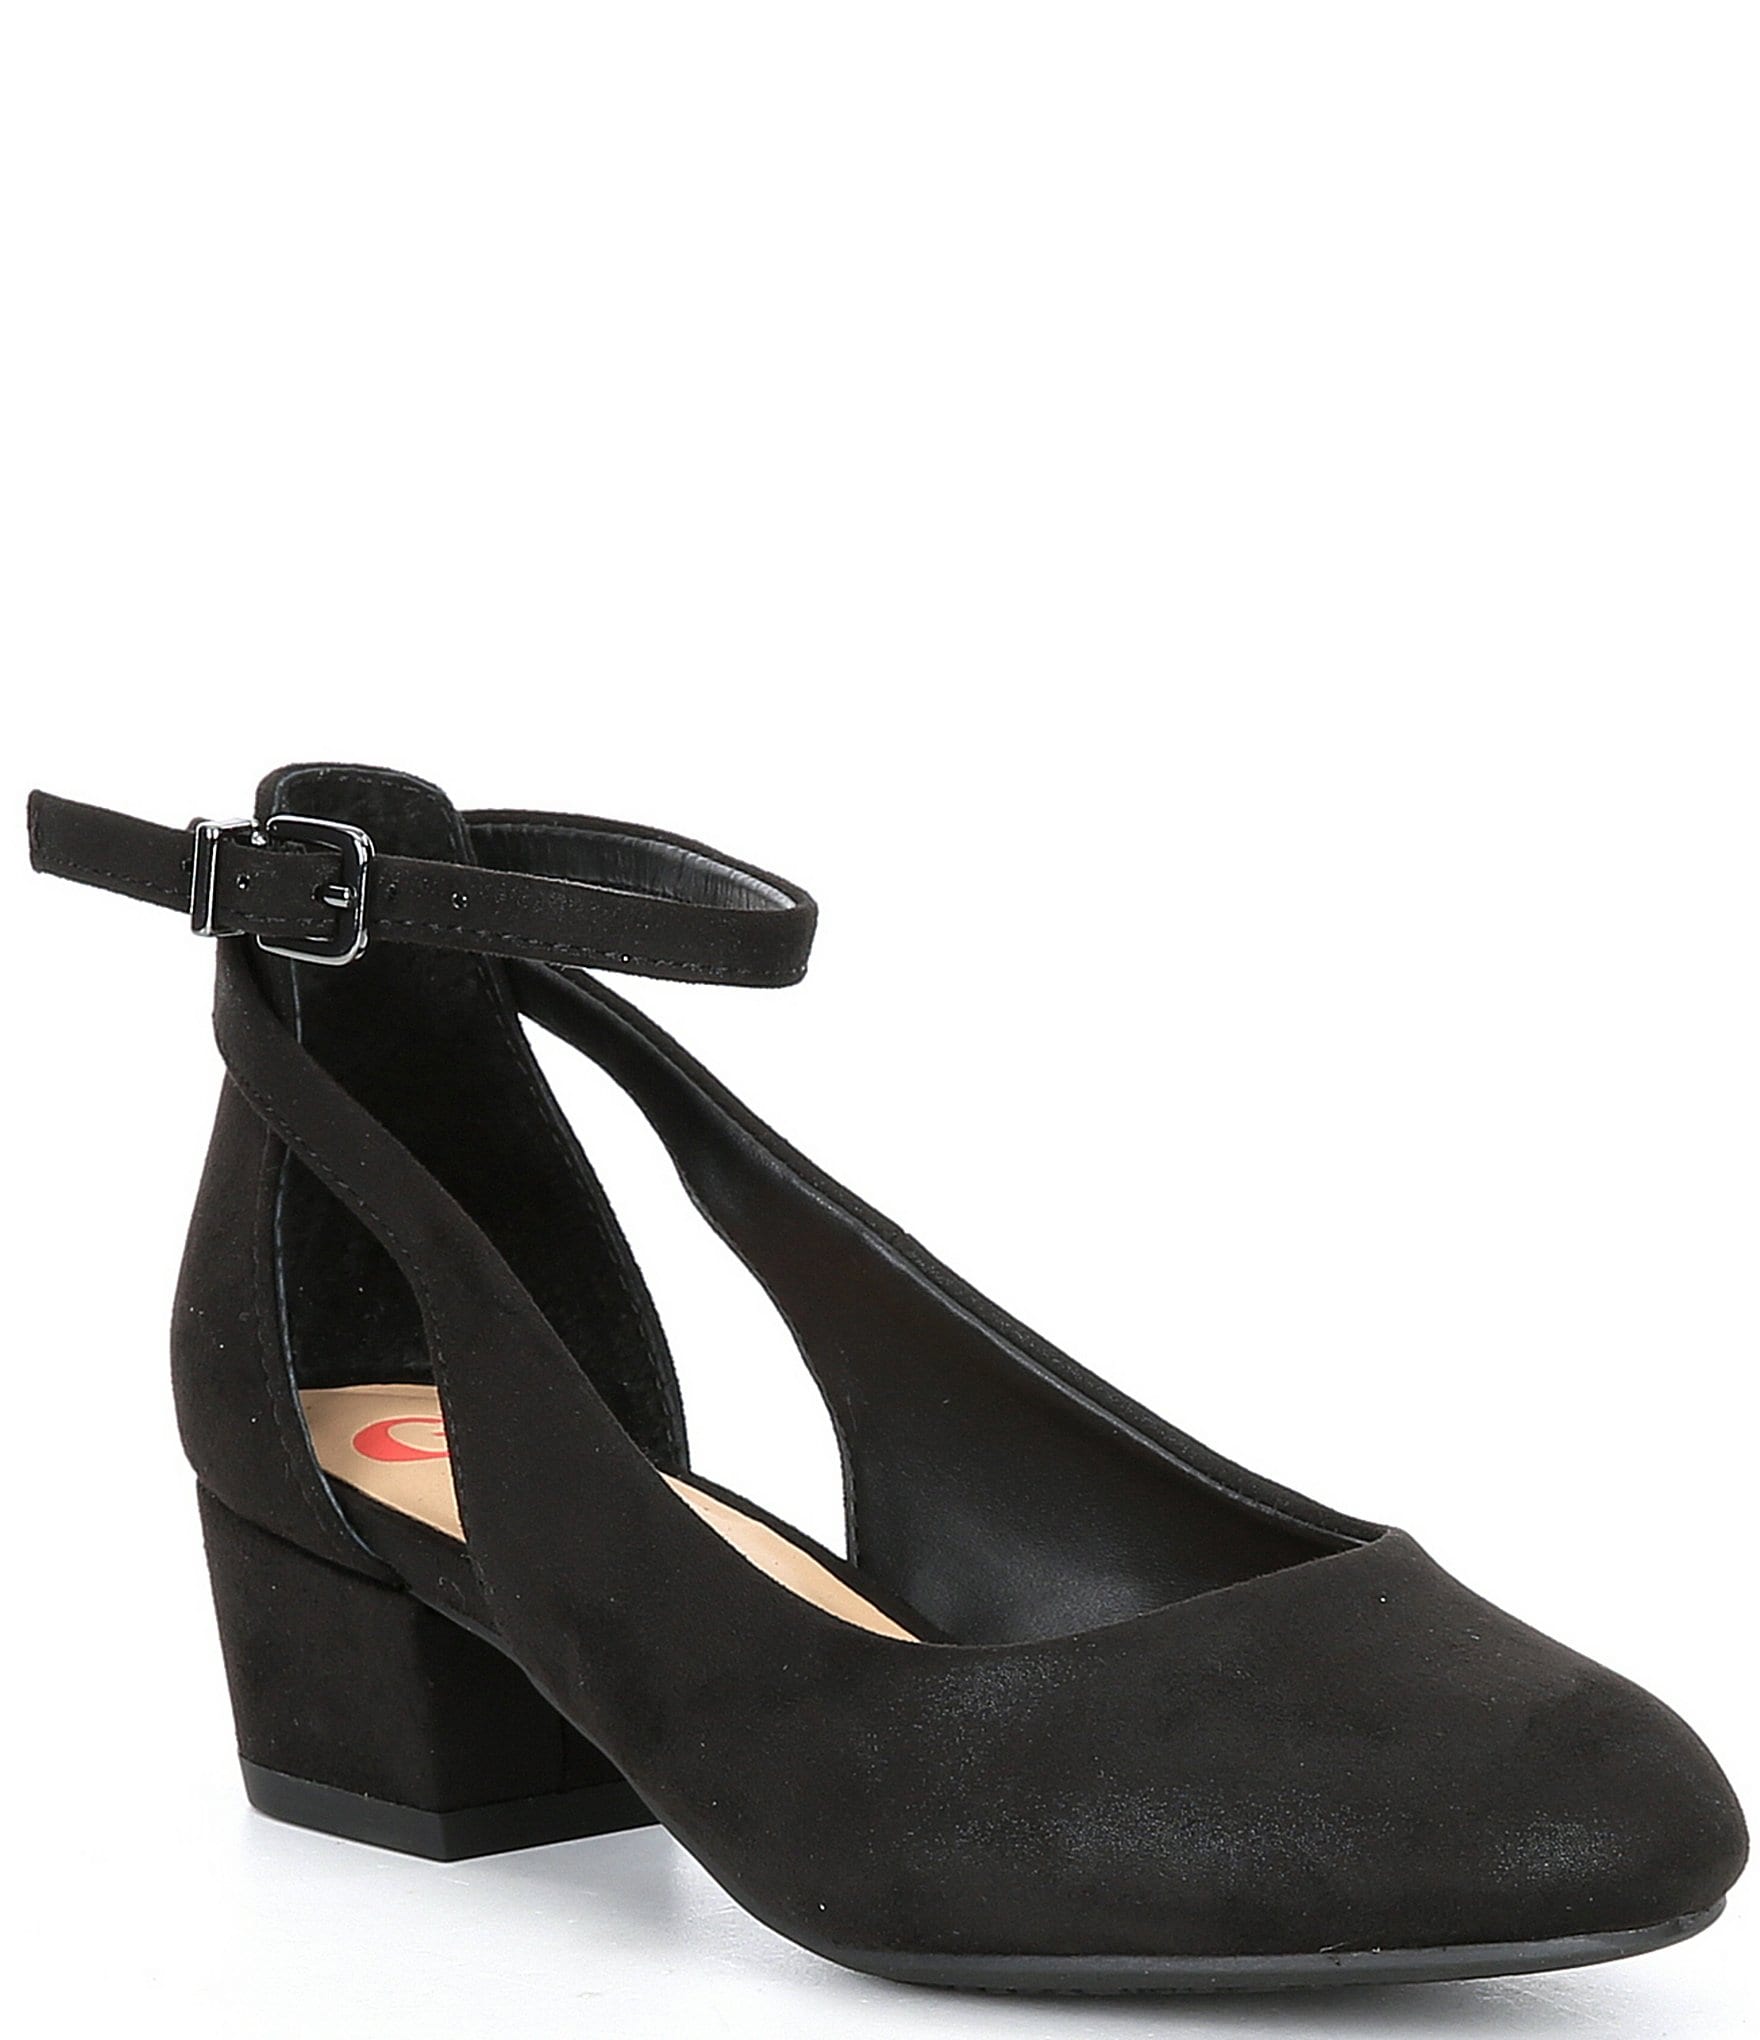 Miggler black heels for girls and women-hkpdtq2012.edu.vn